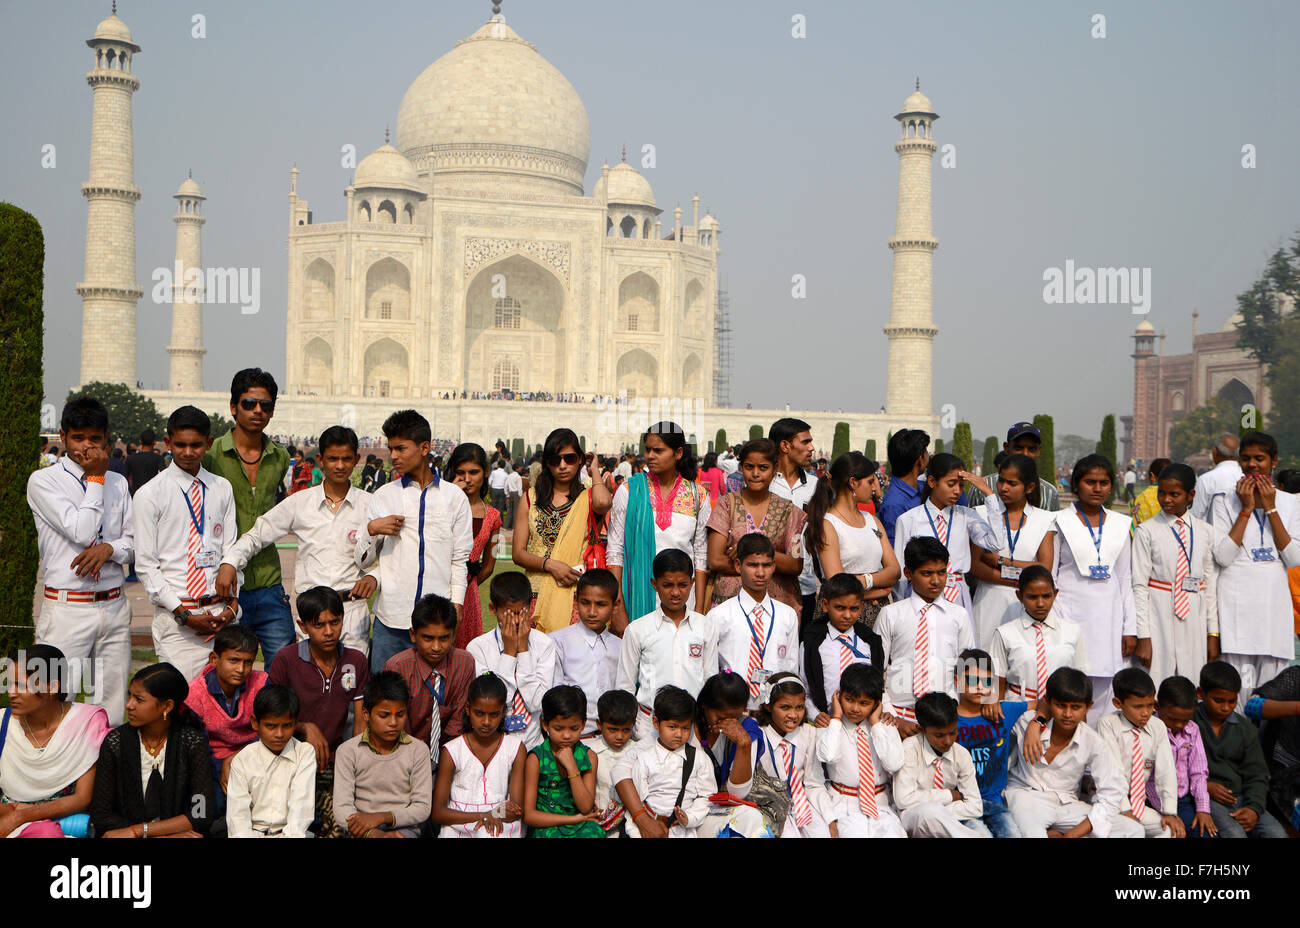 Les enfants de l'école portant robe et posant devant le Taj Mahal, Agra, Inde Banque D'Images